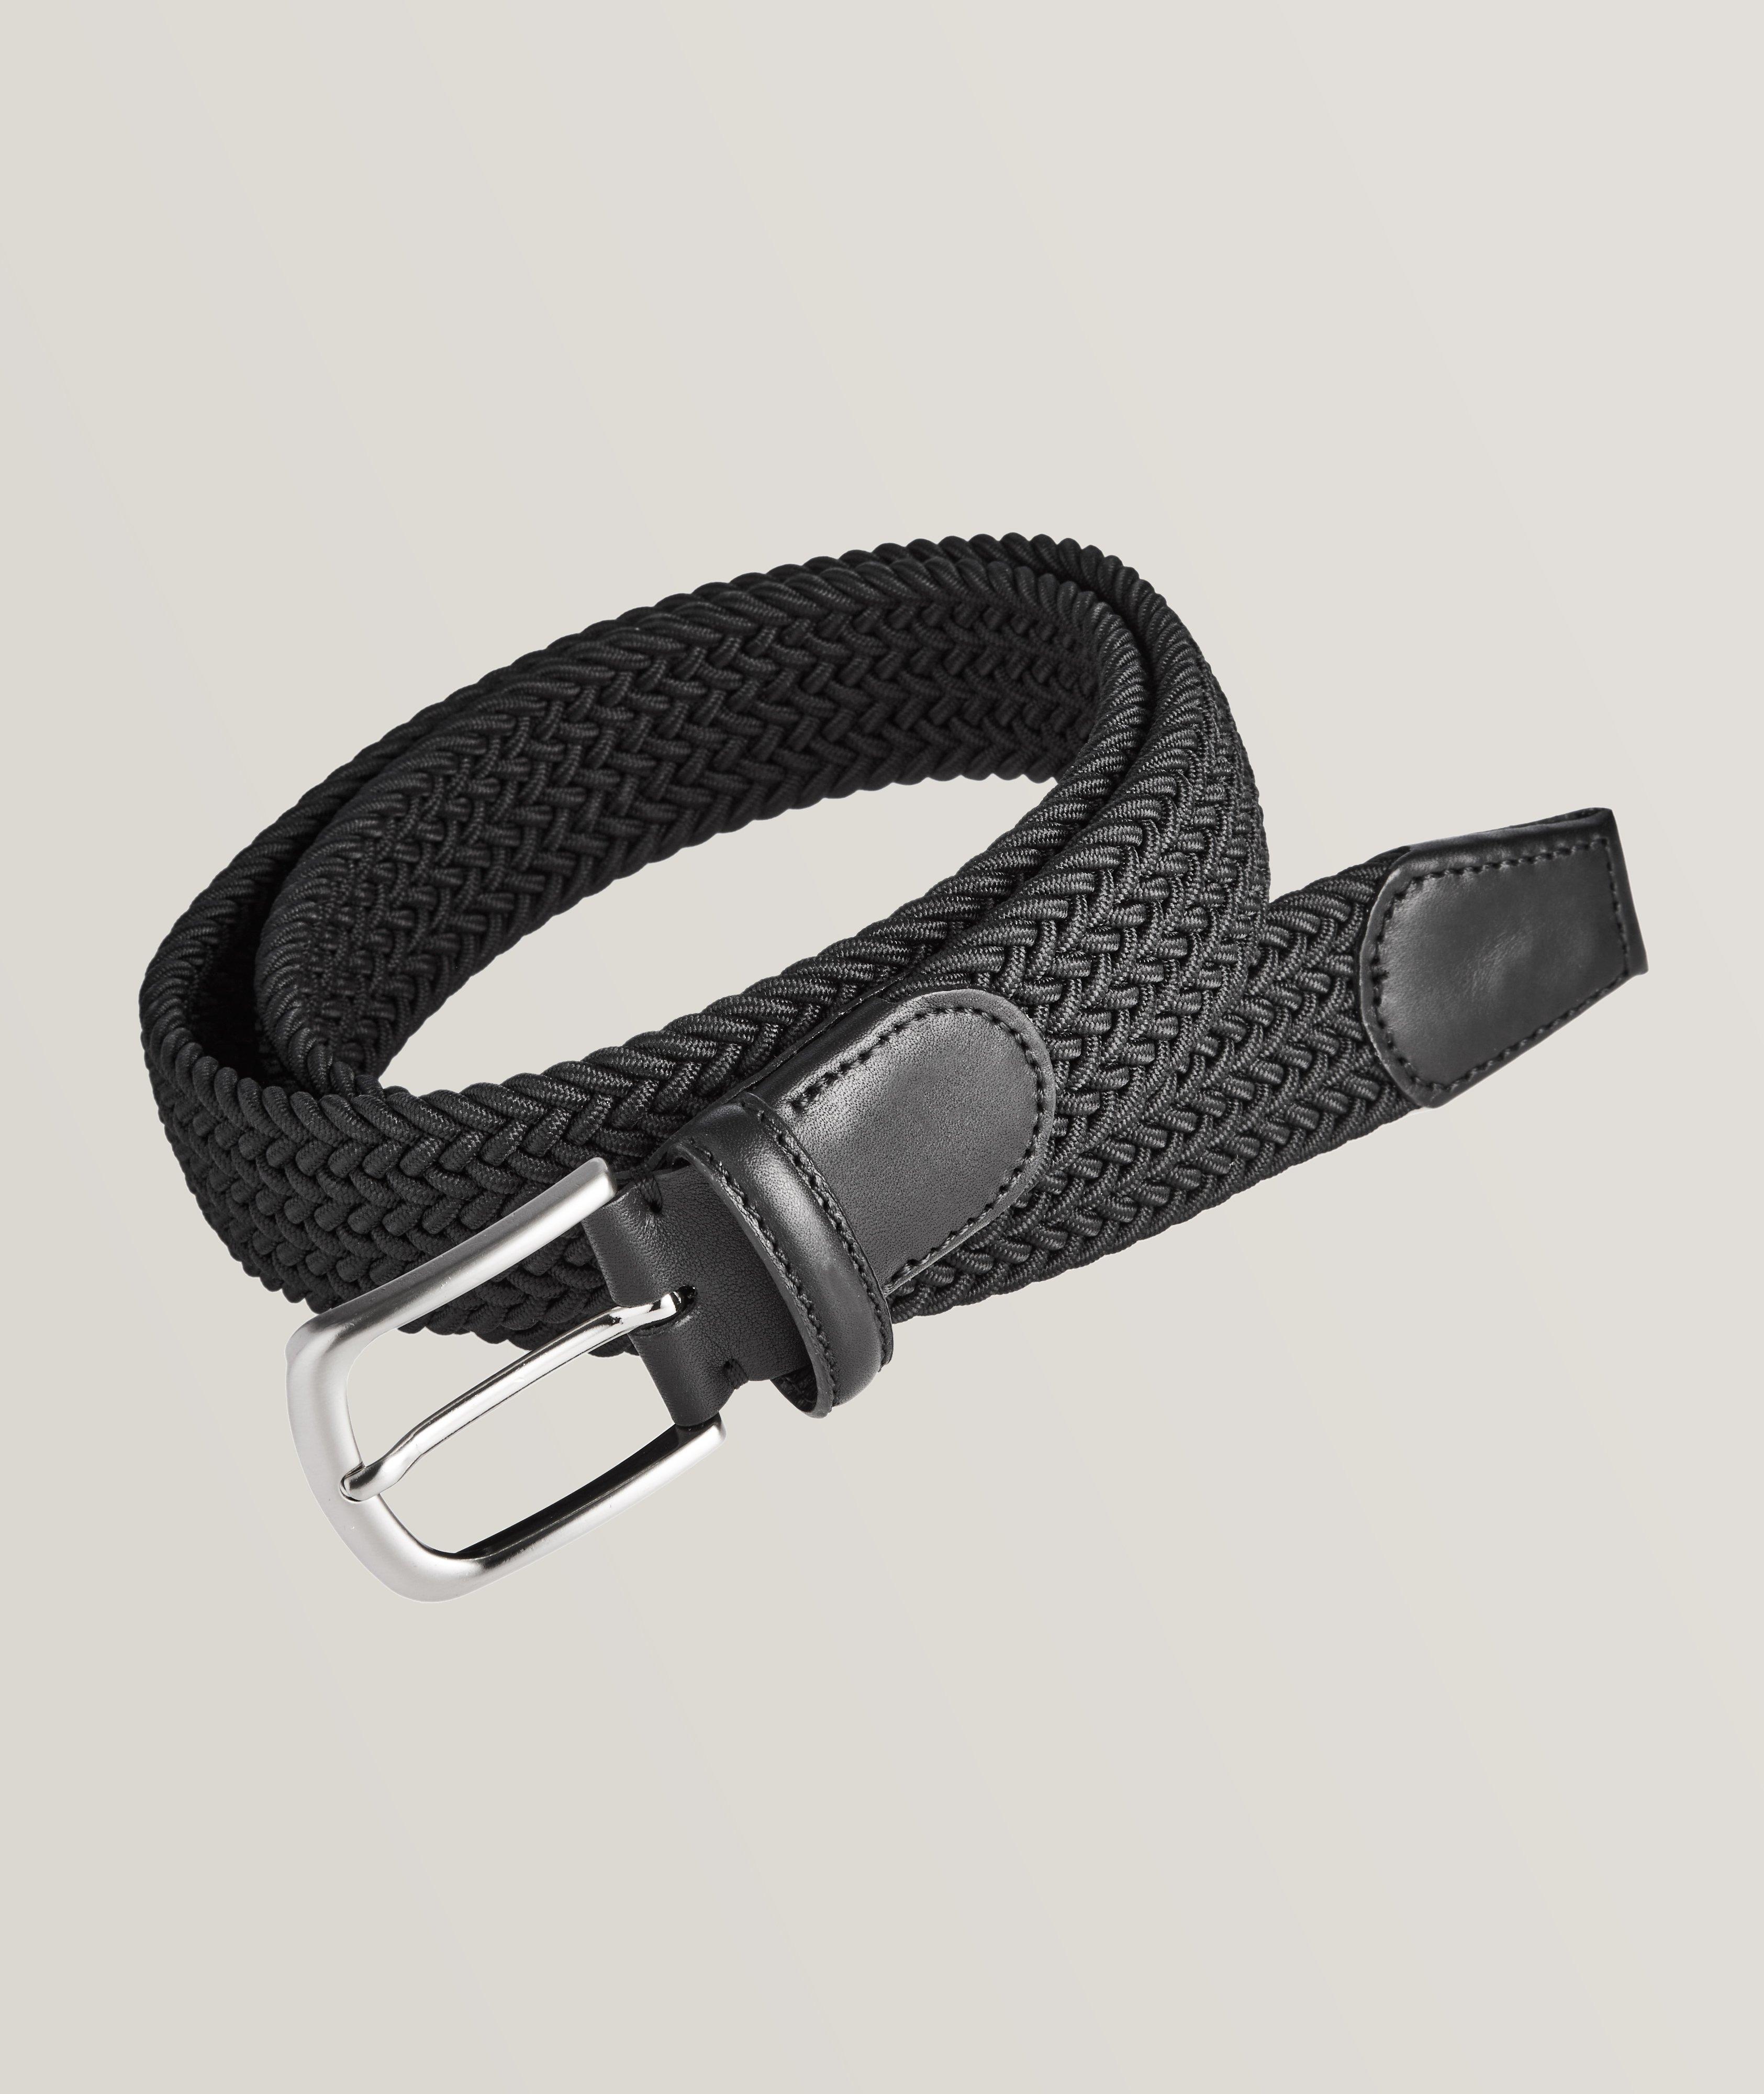 Dubulle-Men's Men's Designer Belt Genuine Leather Black Fashion